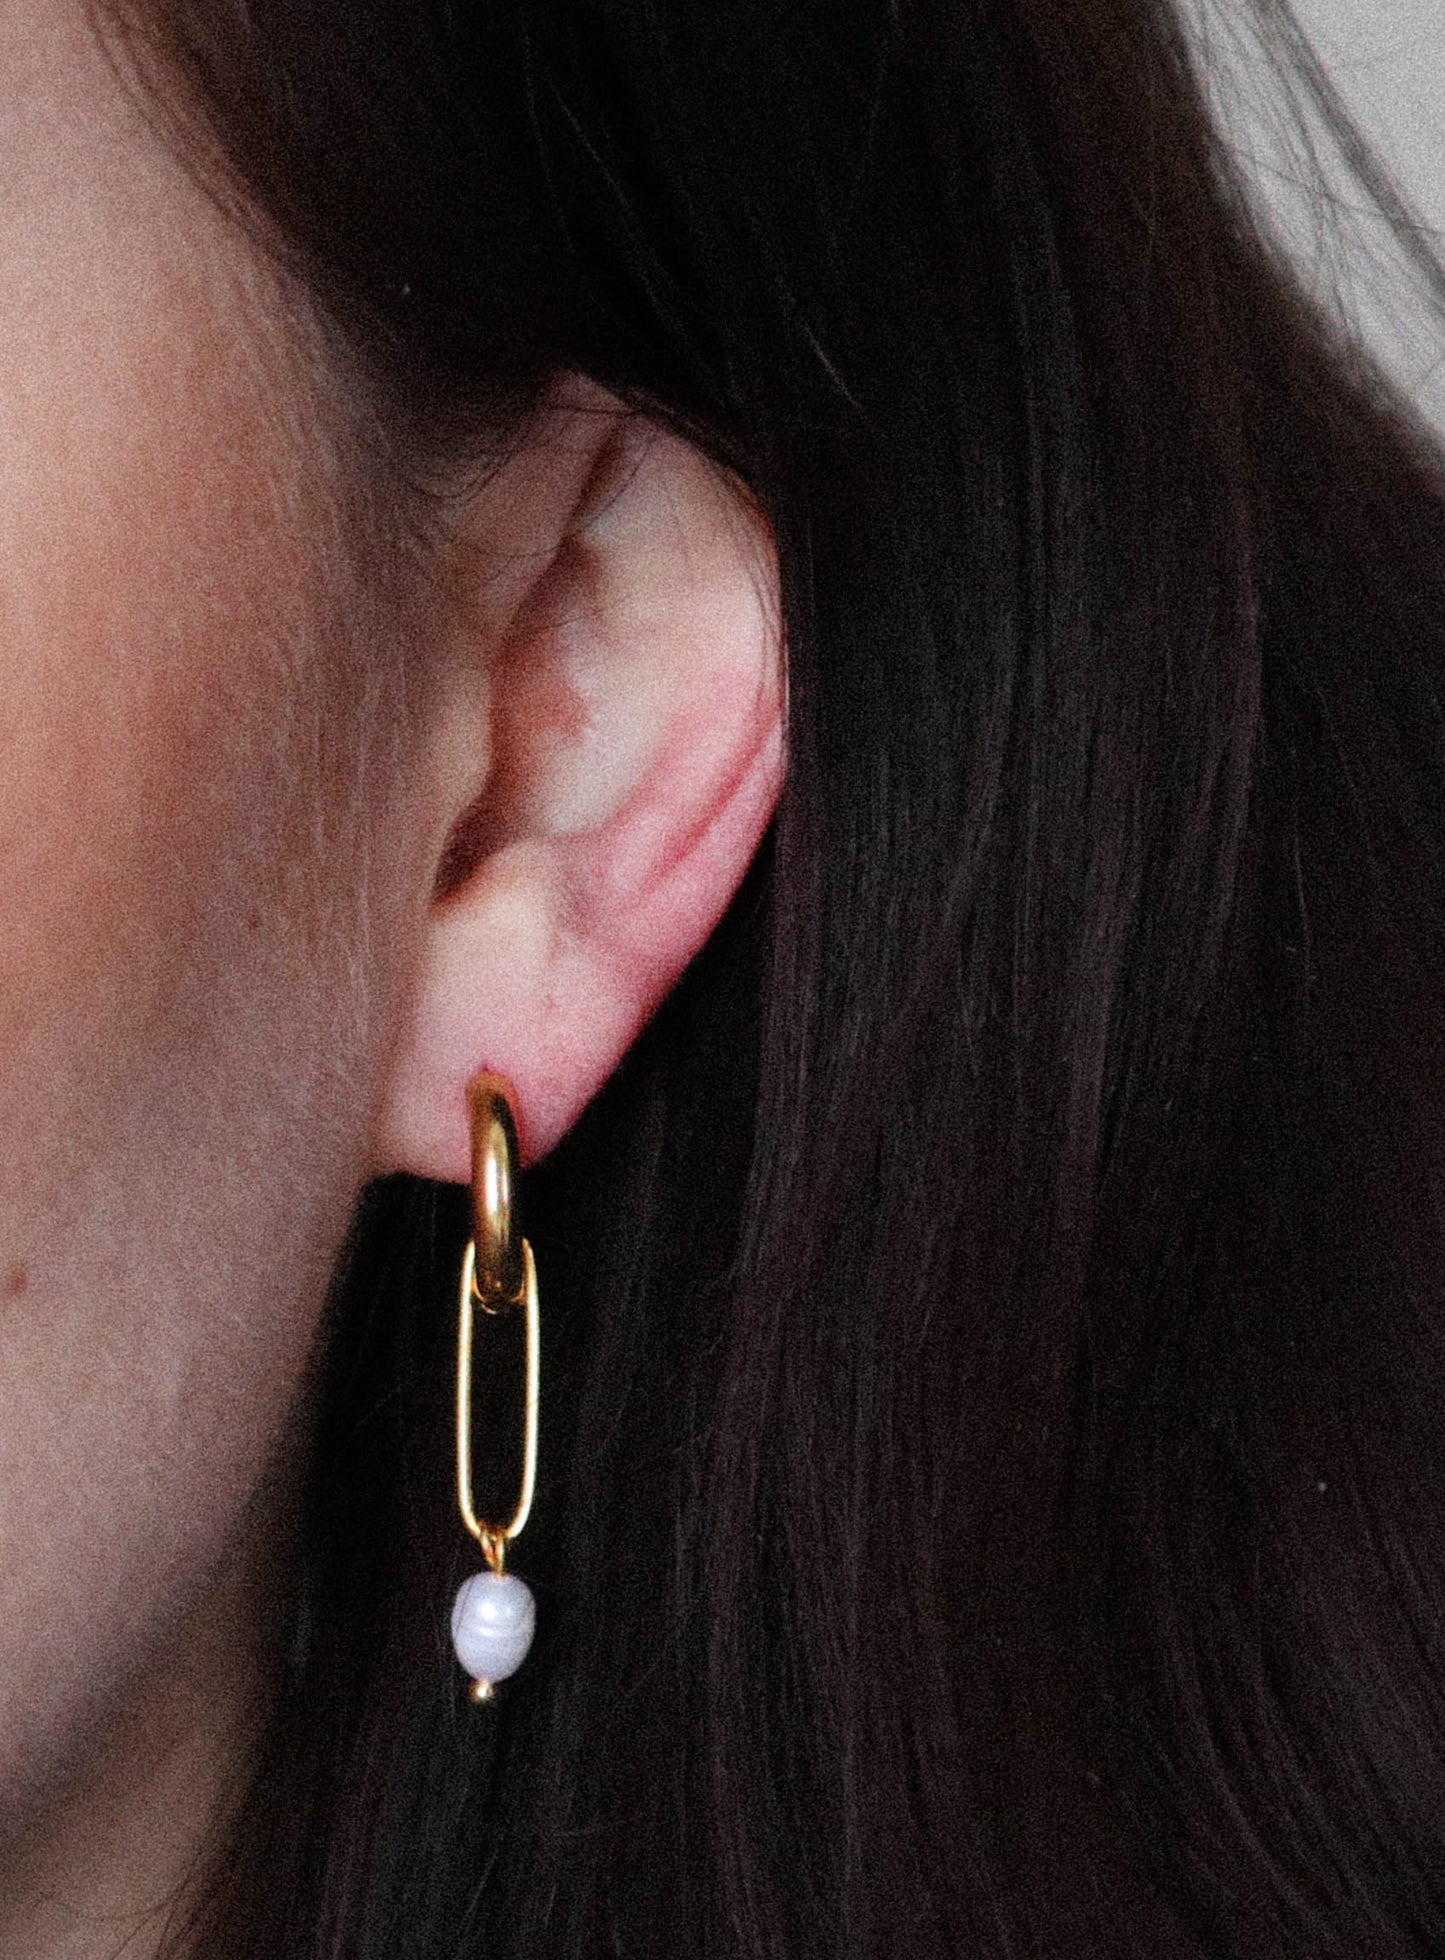 Arka earrings